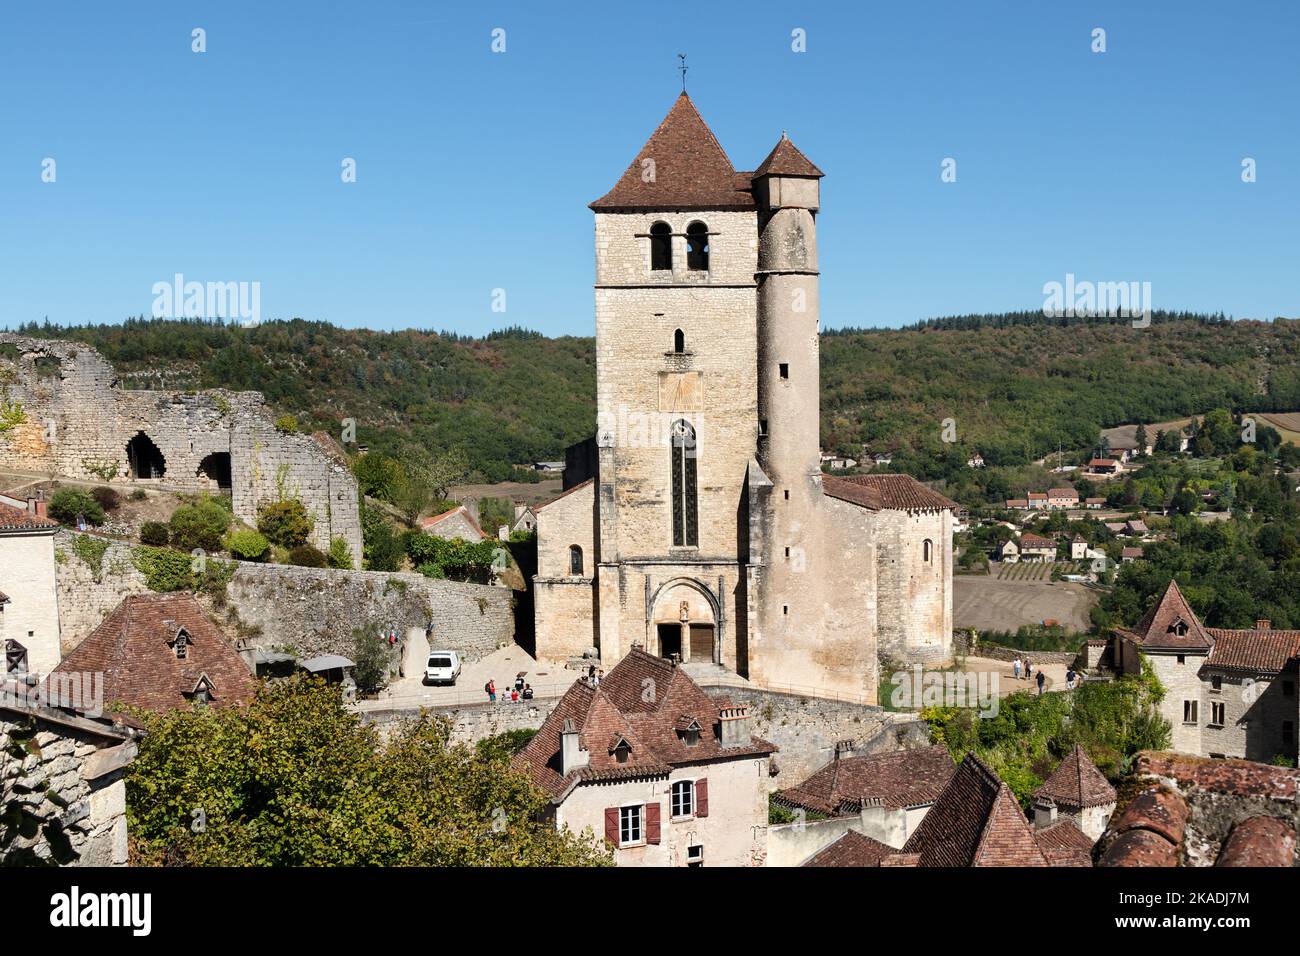 Il villaggio medievale di Saint-Cirq-Lapopie sul fiume Lot, dipartimento del Lot, Francia Foto Stock